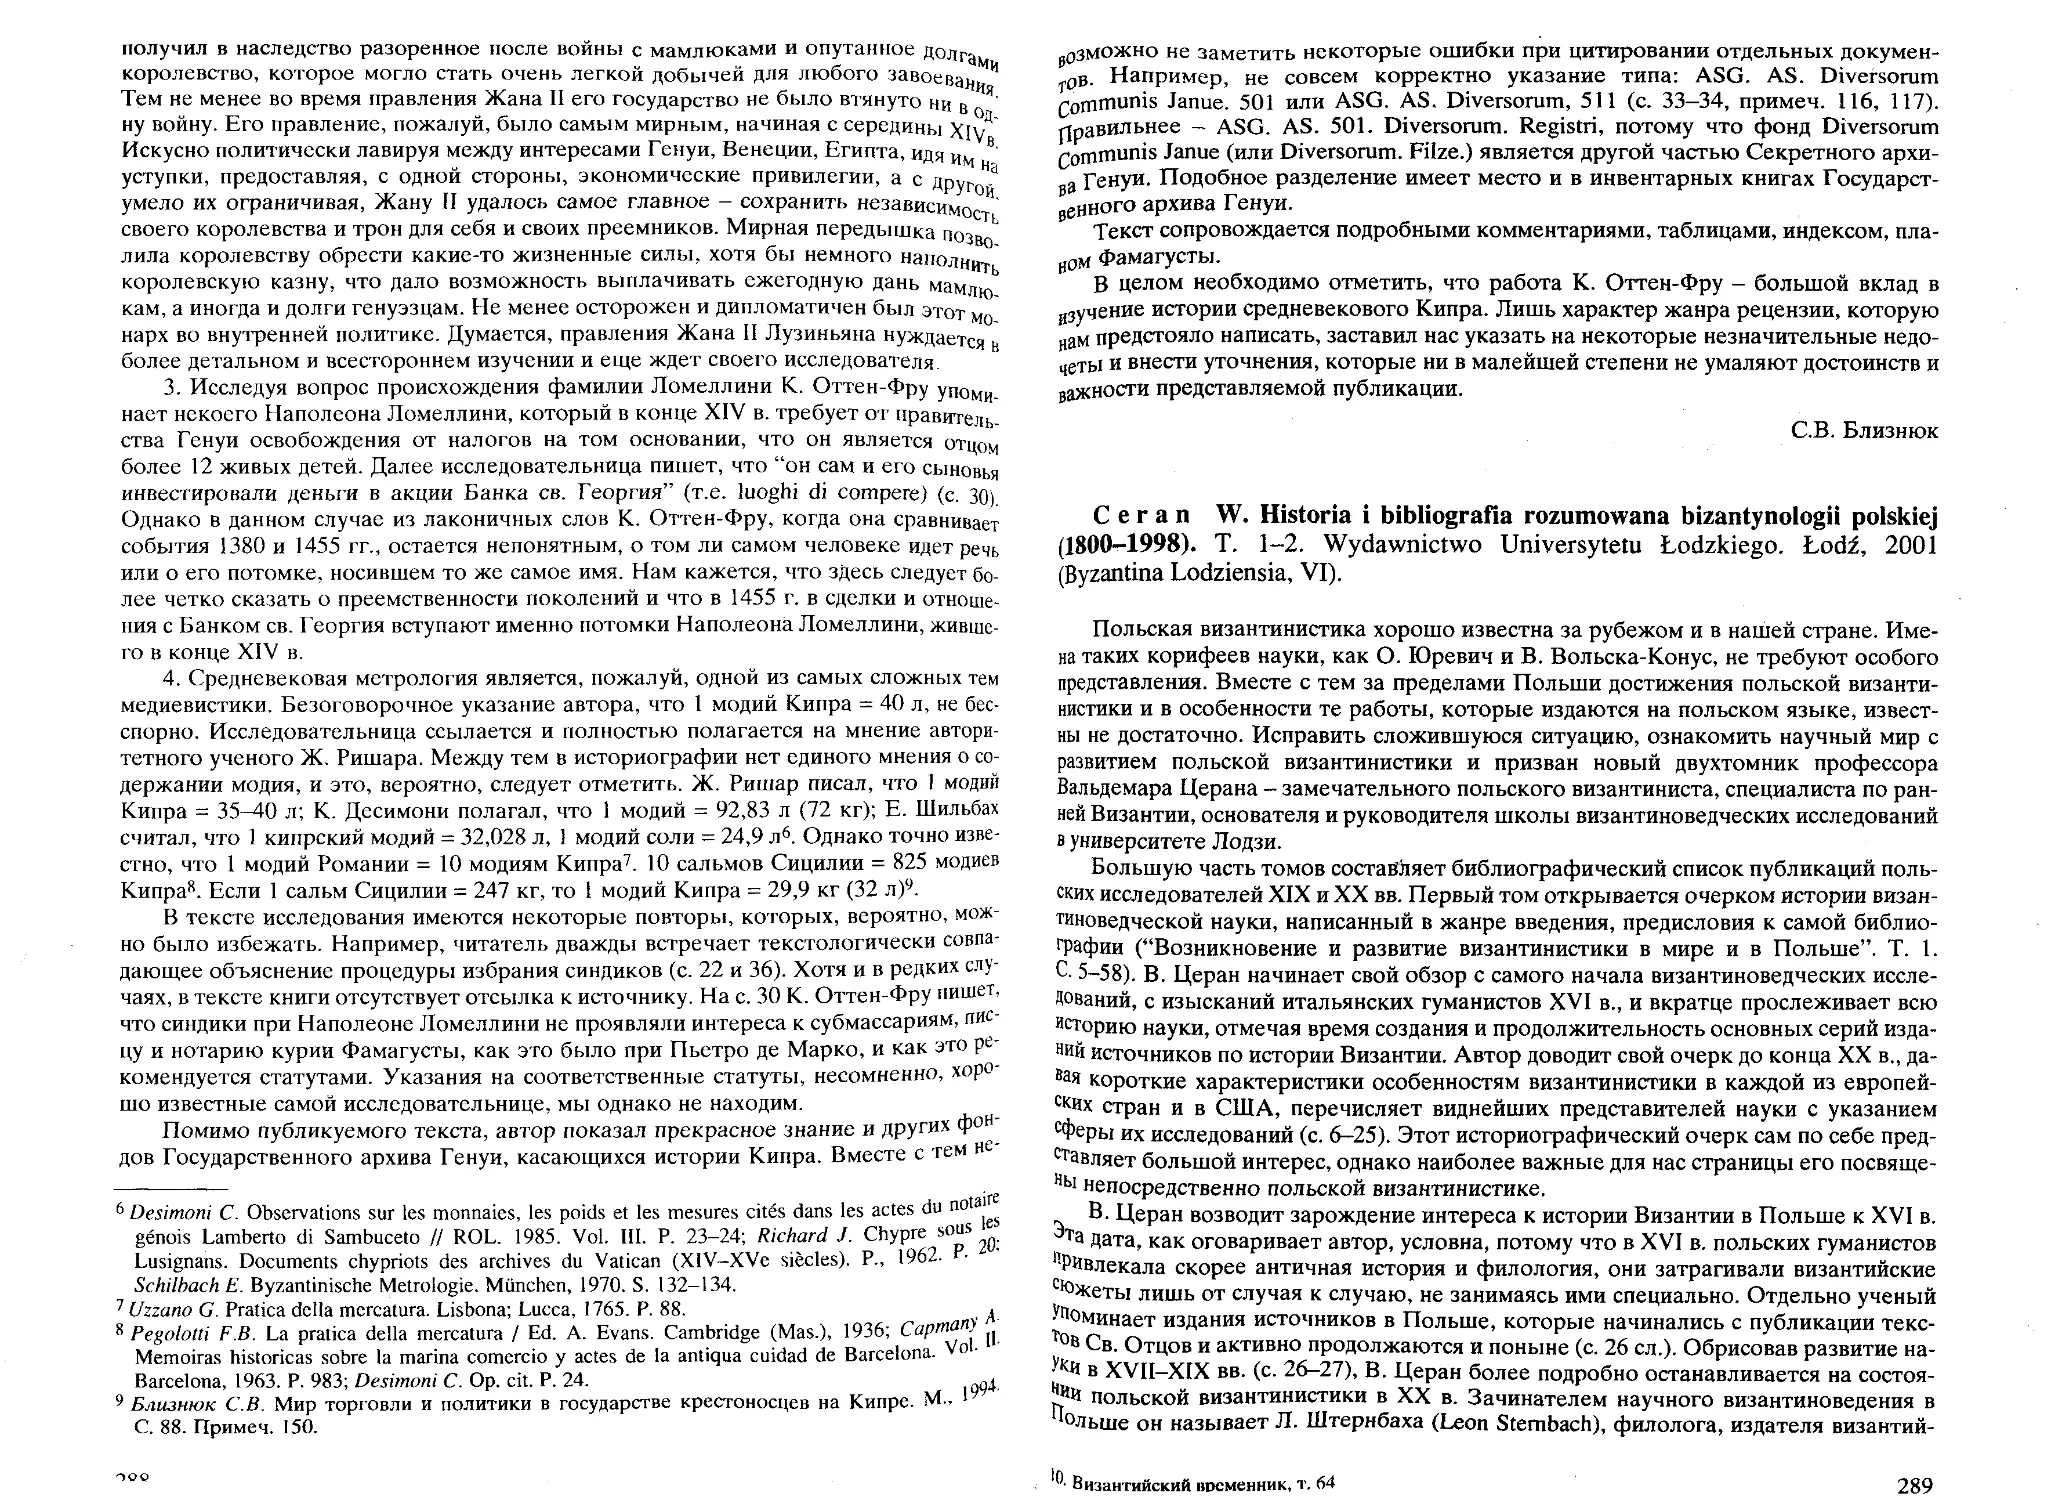 ﻿Ceran W. Historia i bibliografia rozumowana bizantynologii polskiej ø1800-1998ù. T. 1-2 øМ. С. Меньшикова